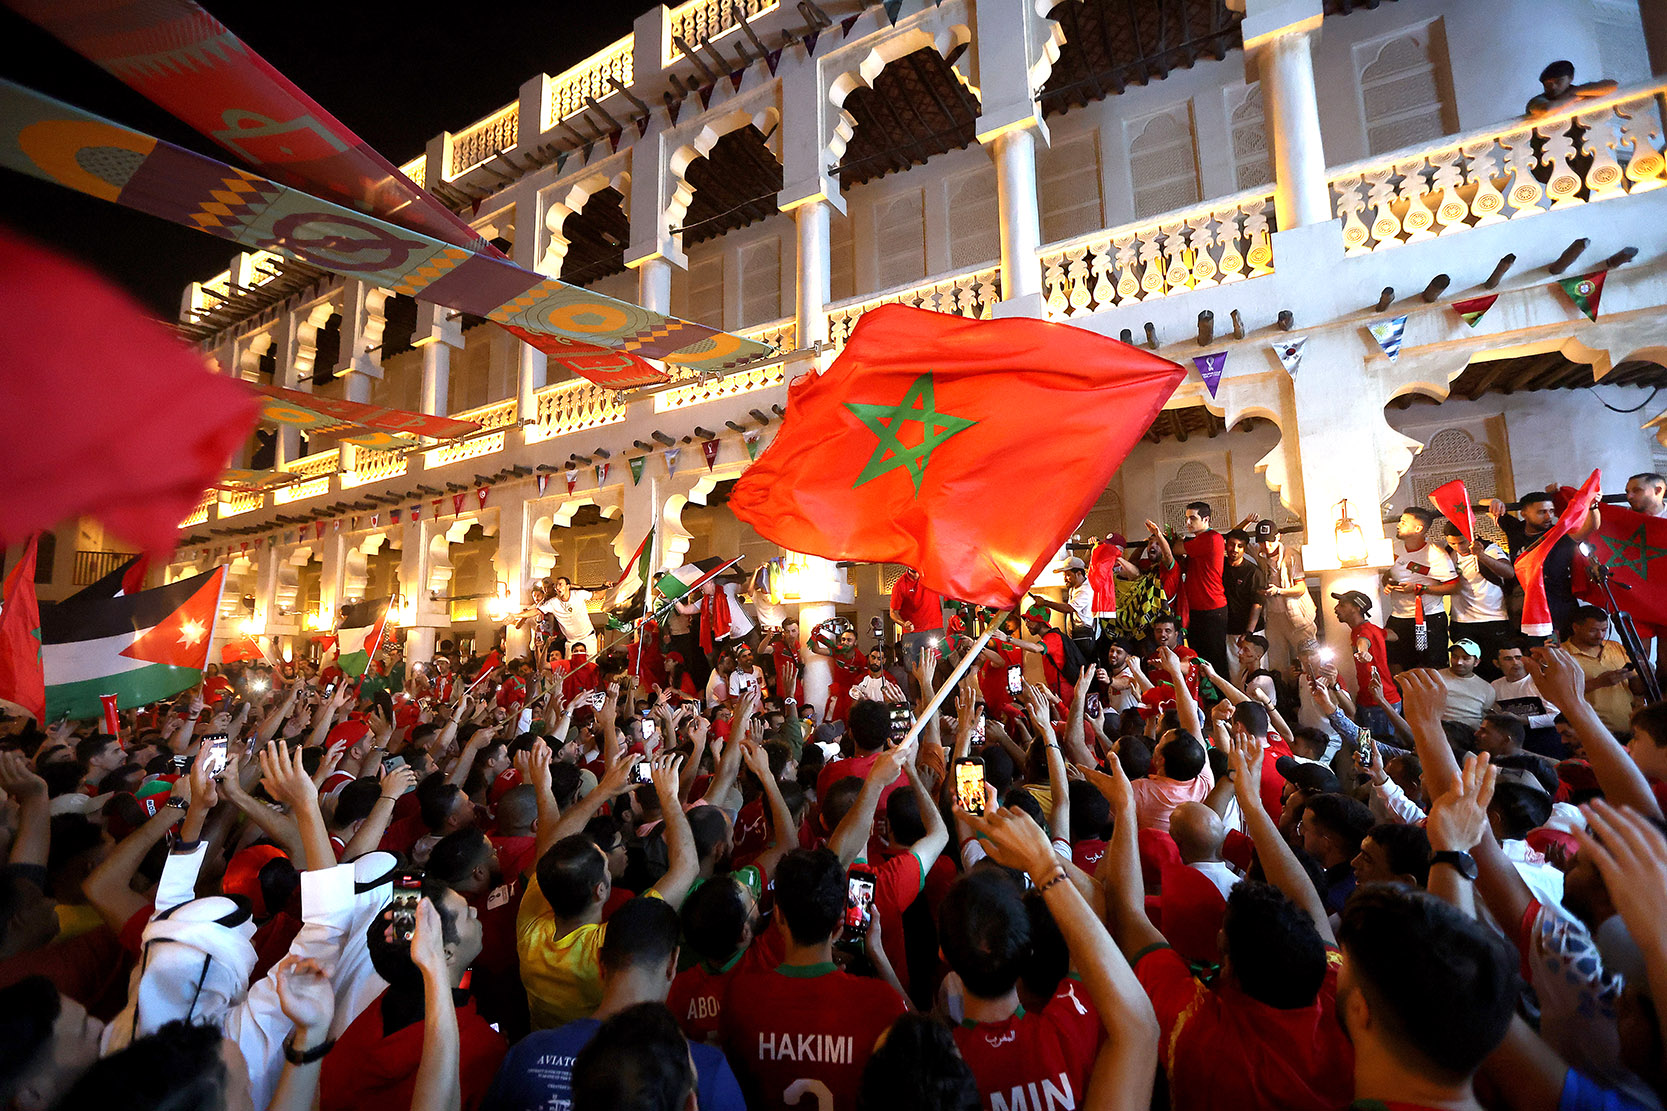 Morocco fans celebrate in Souq Waqif 